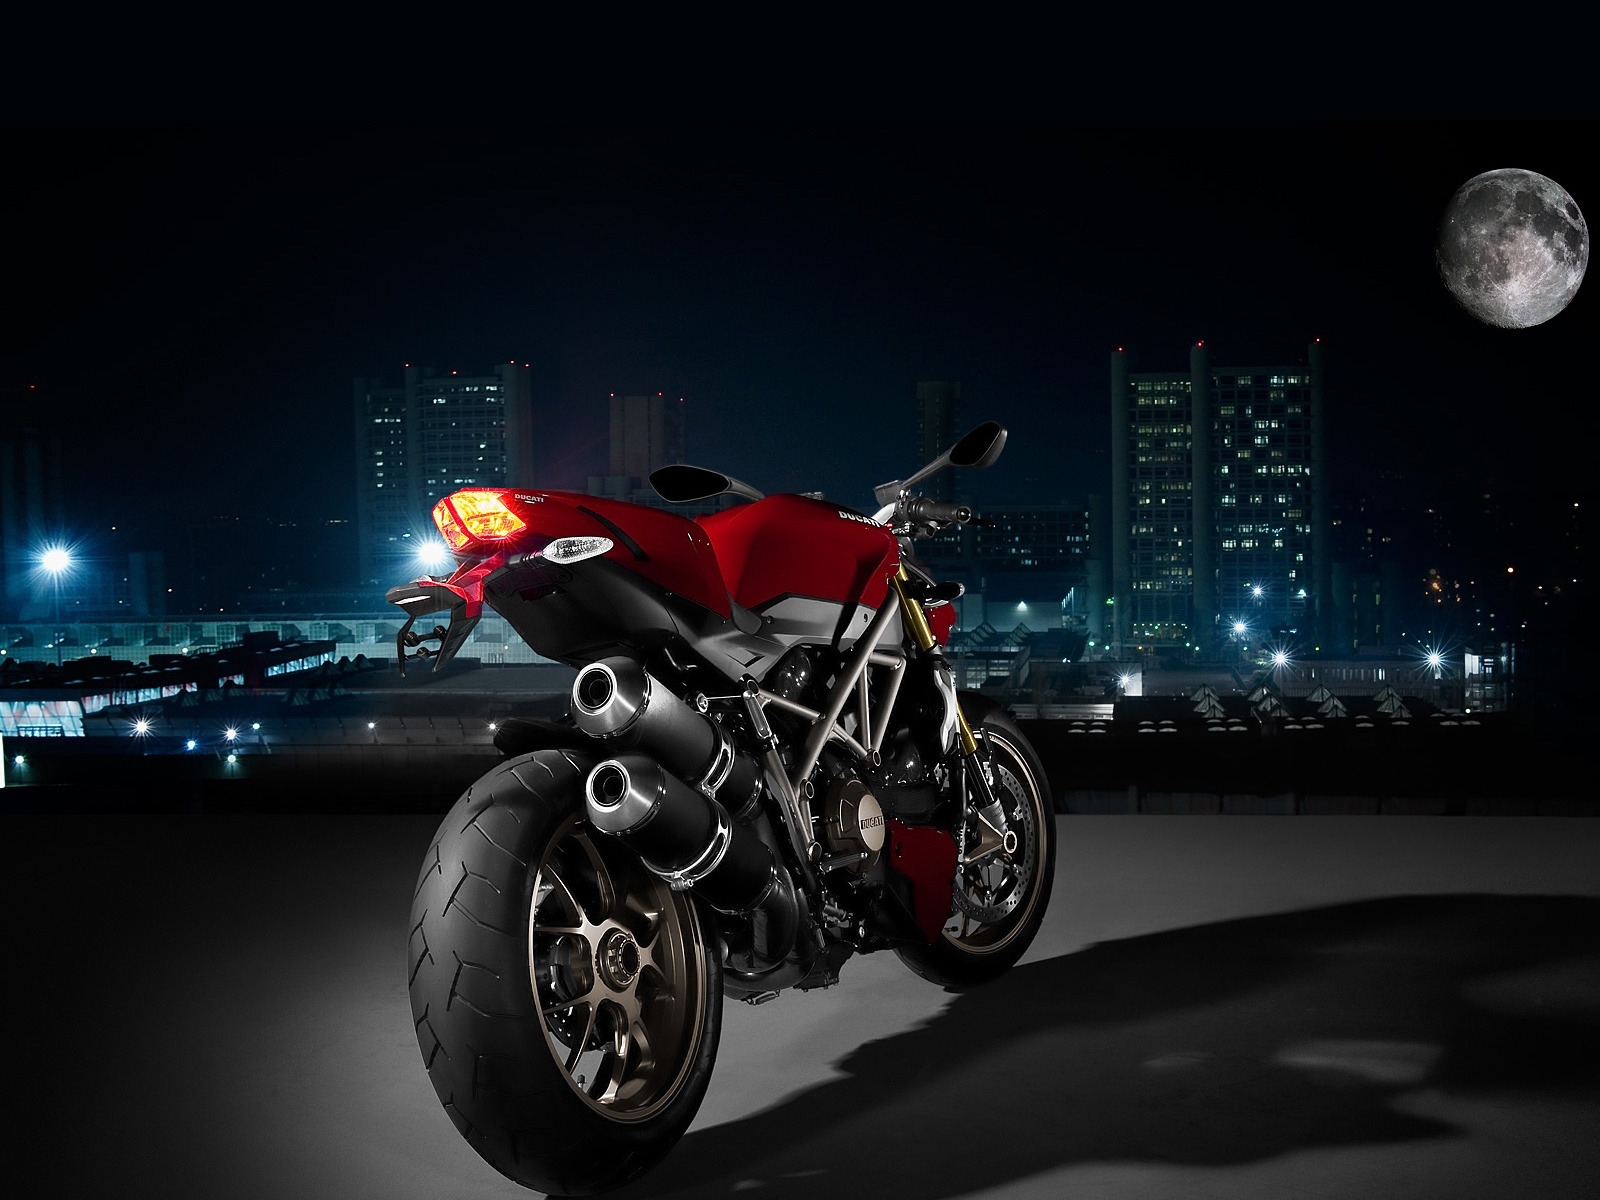 Ducati Super Sport Rear Angle for 1600 x 1200 resolution